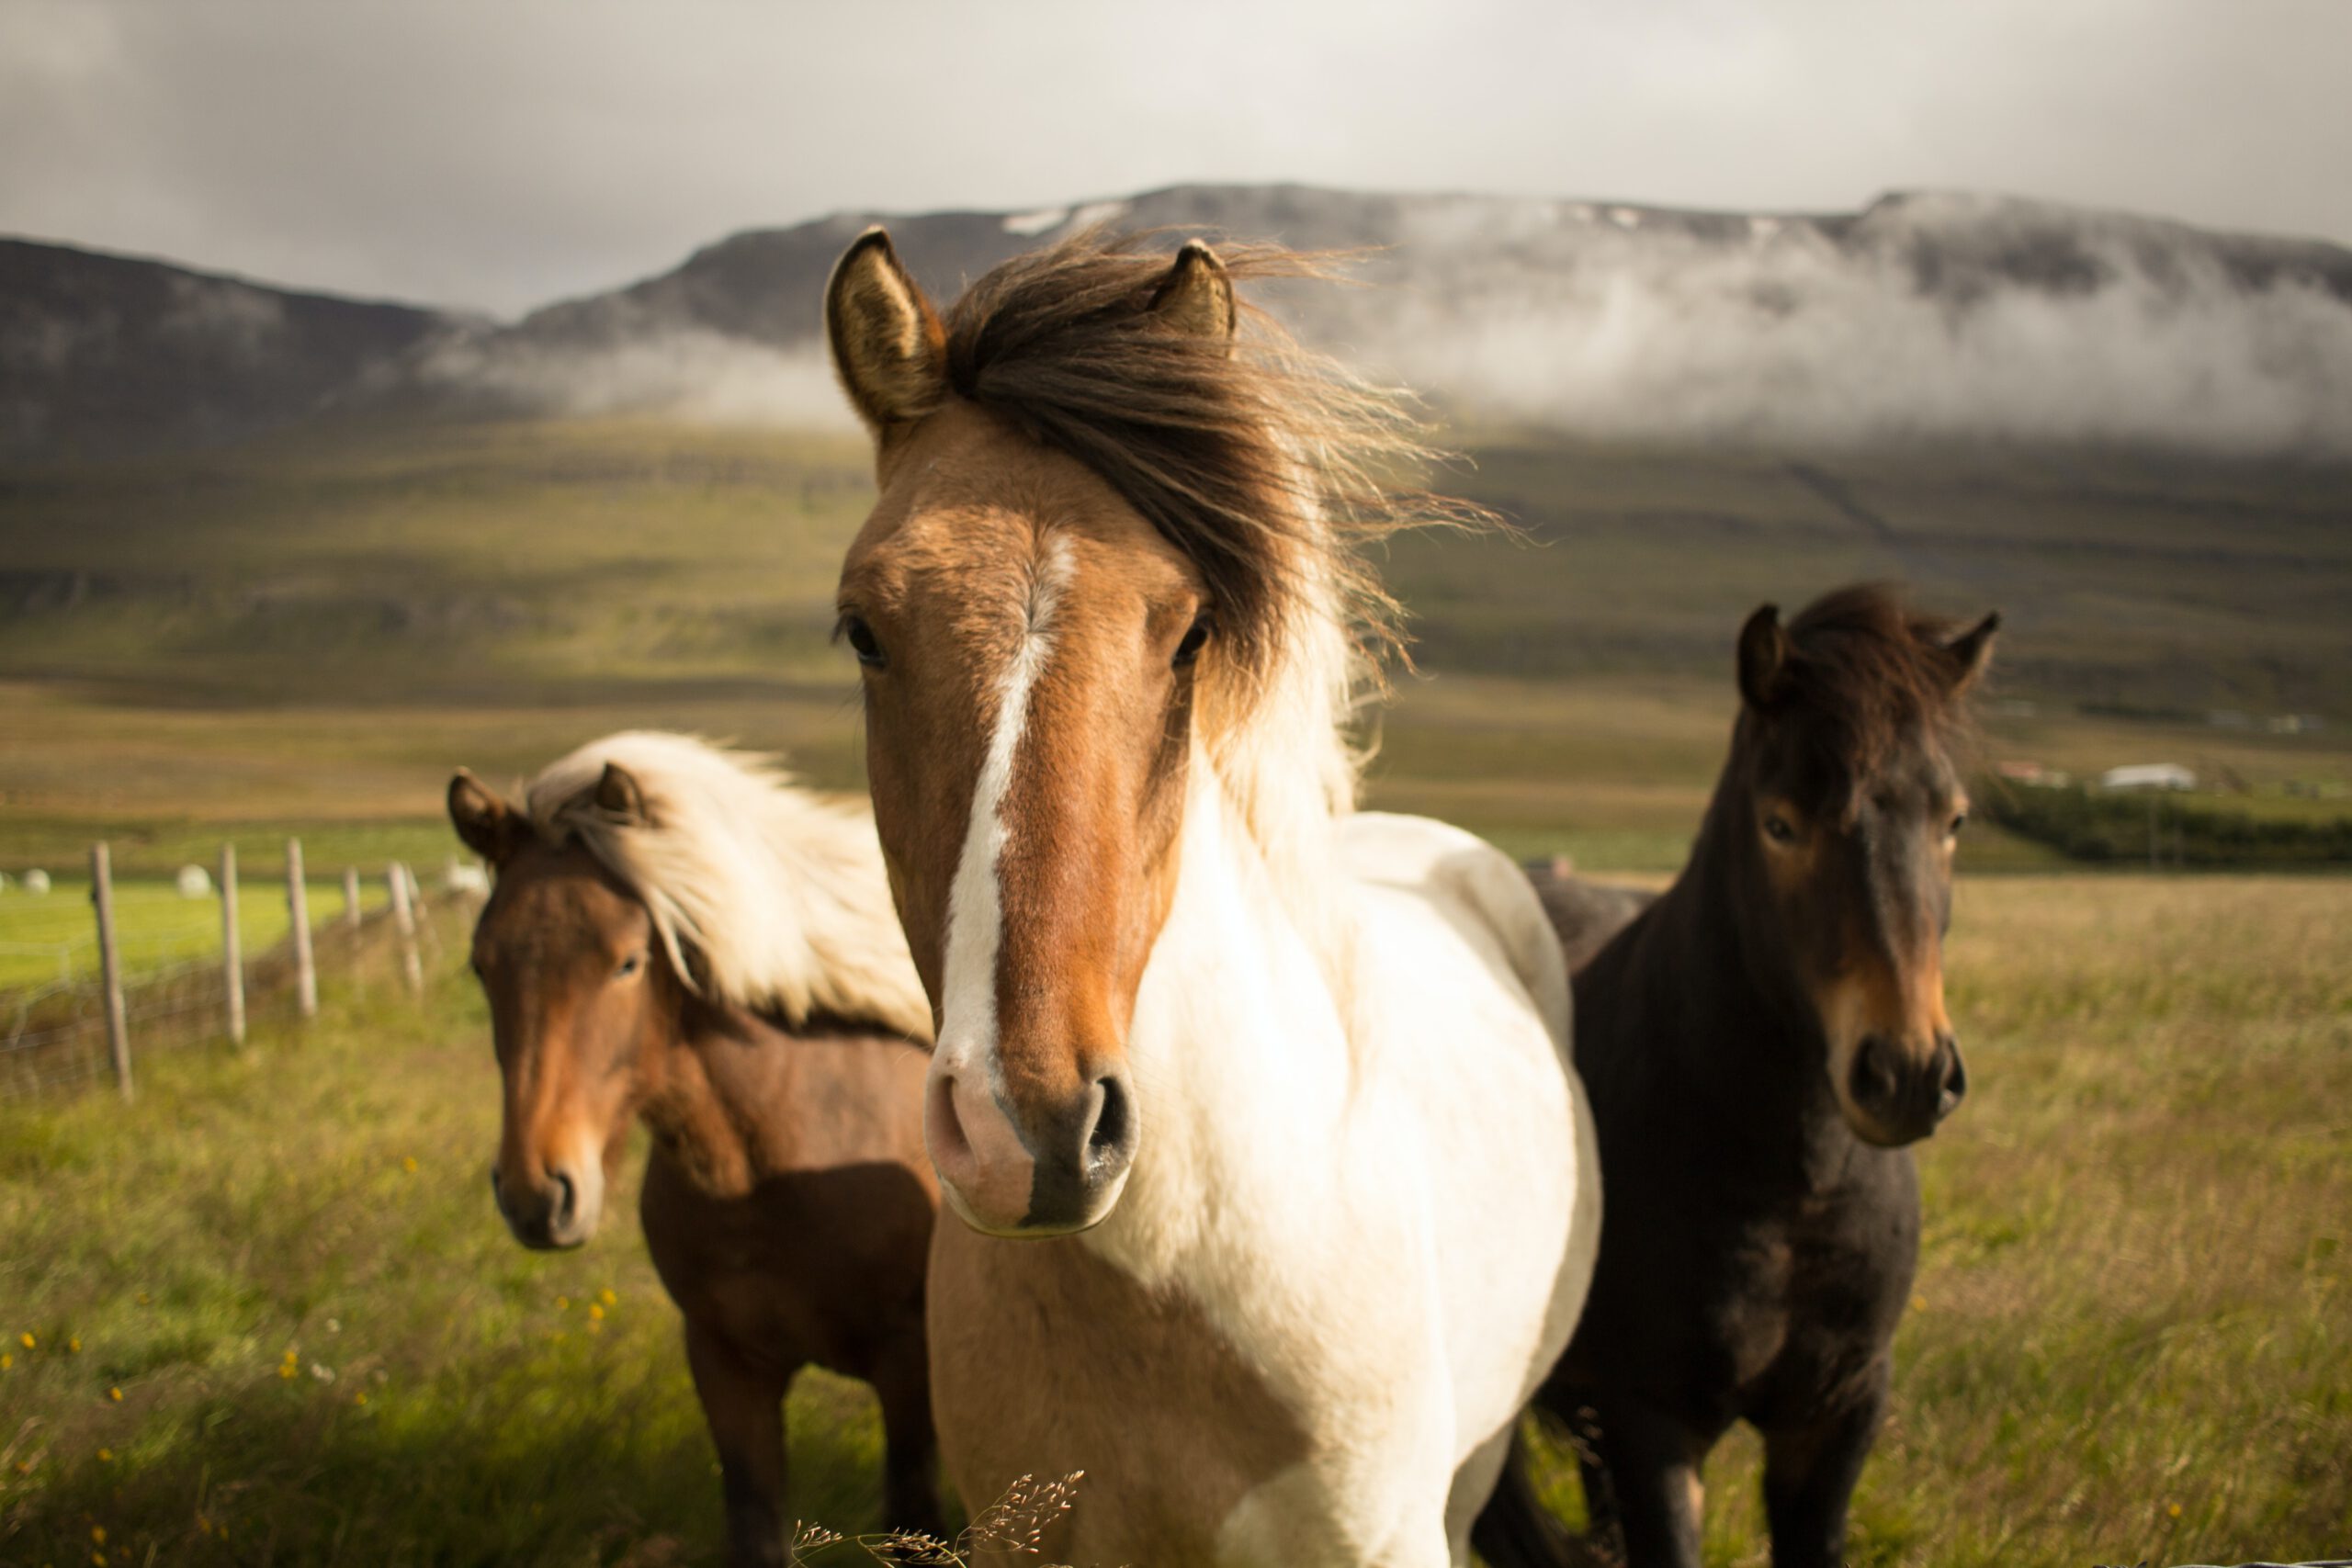 Iceland horses - Photo by Fabian Burghardt on Unsplash